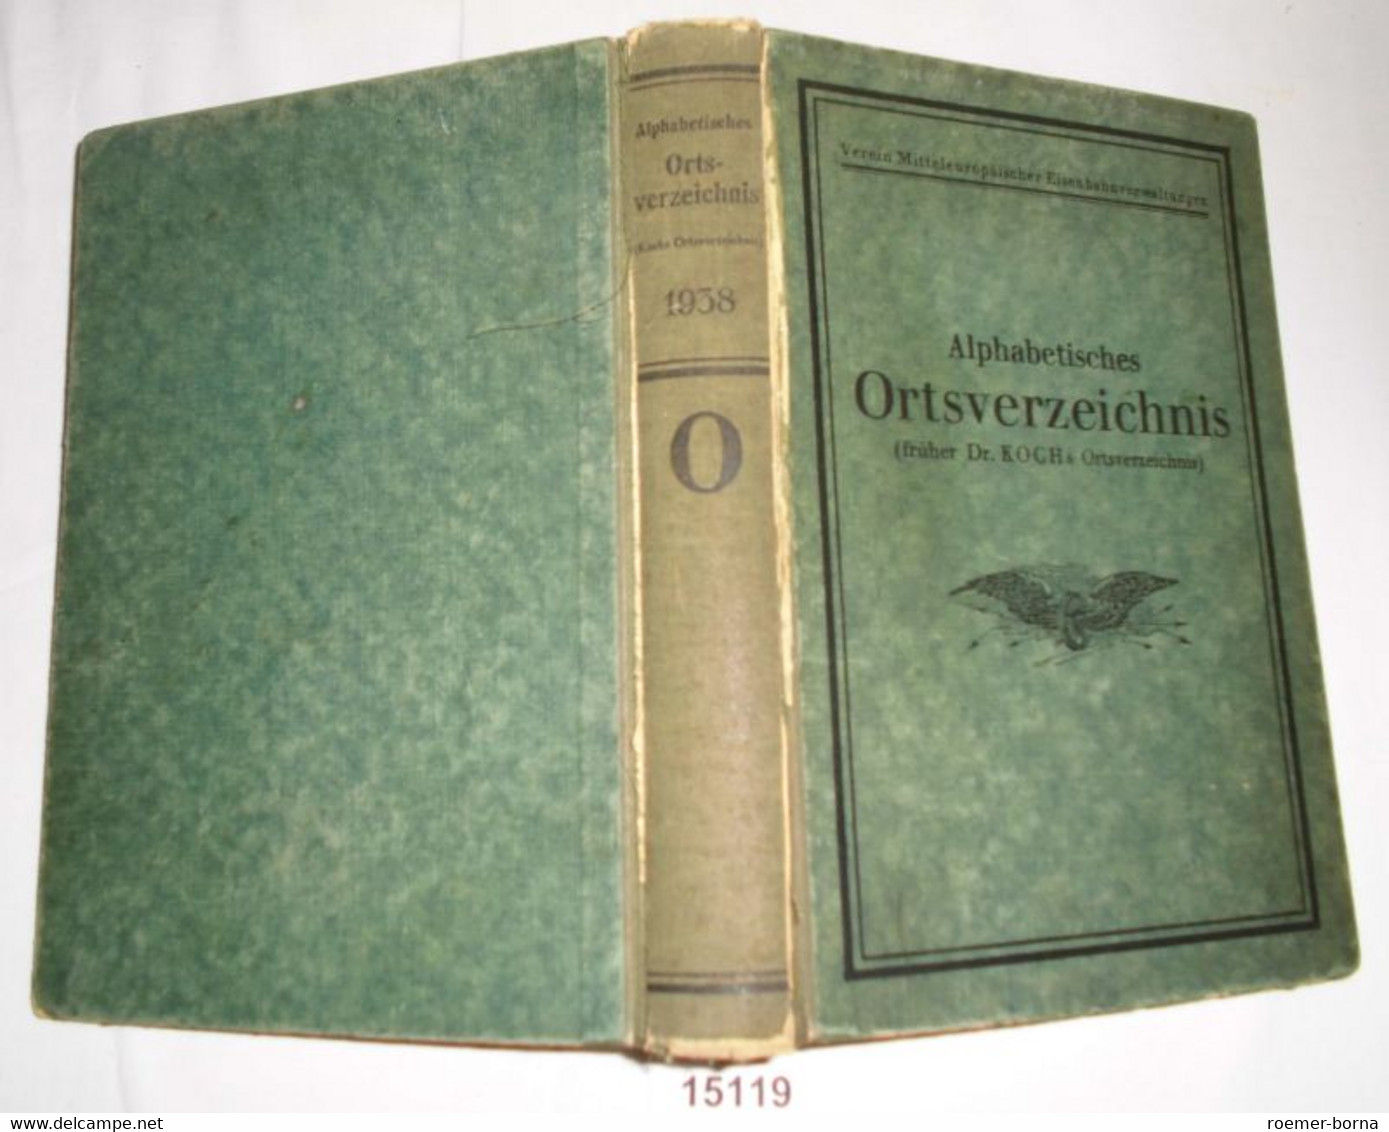 Alphabetisches Ortsverzeichnis (früher Dr. Koch's Orstverzeichnis) Ausgabe 1938, Verein Mitteleuropäischer Eisenbahnverw - Unclassified